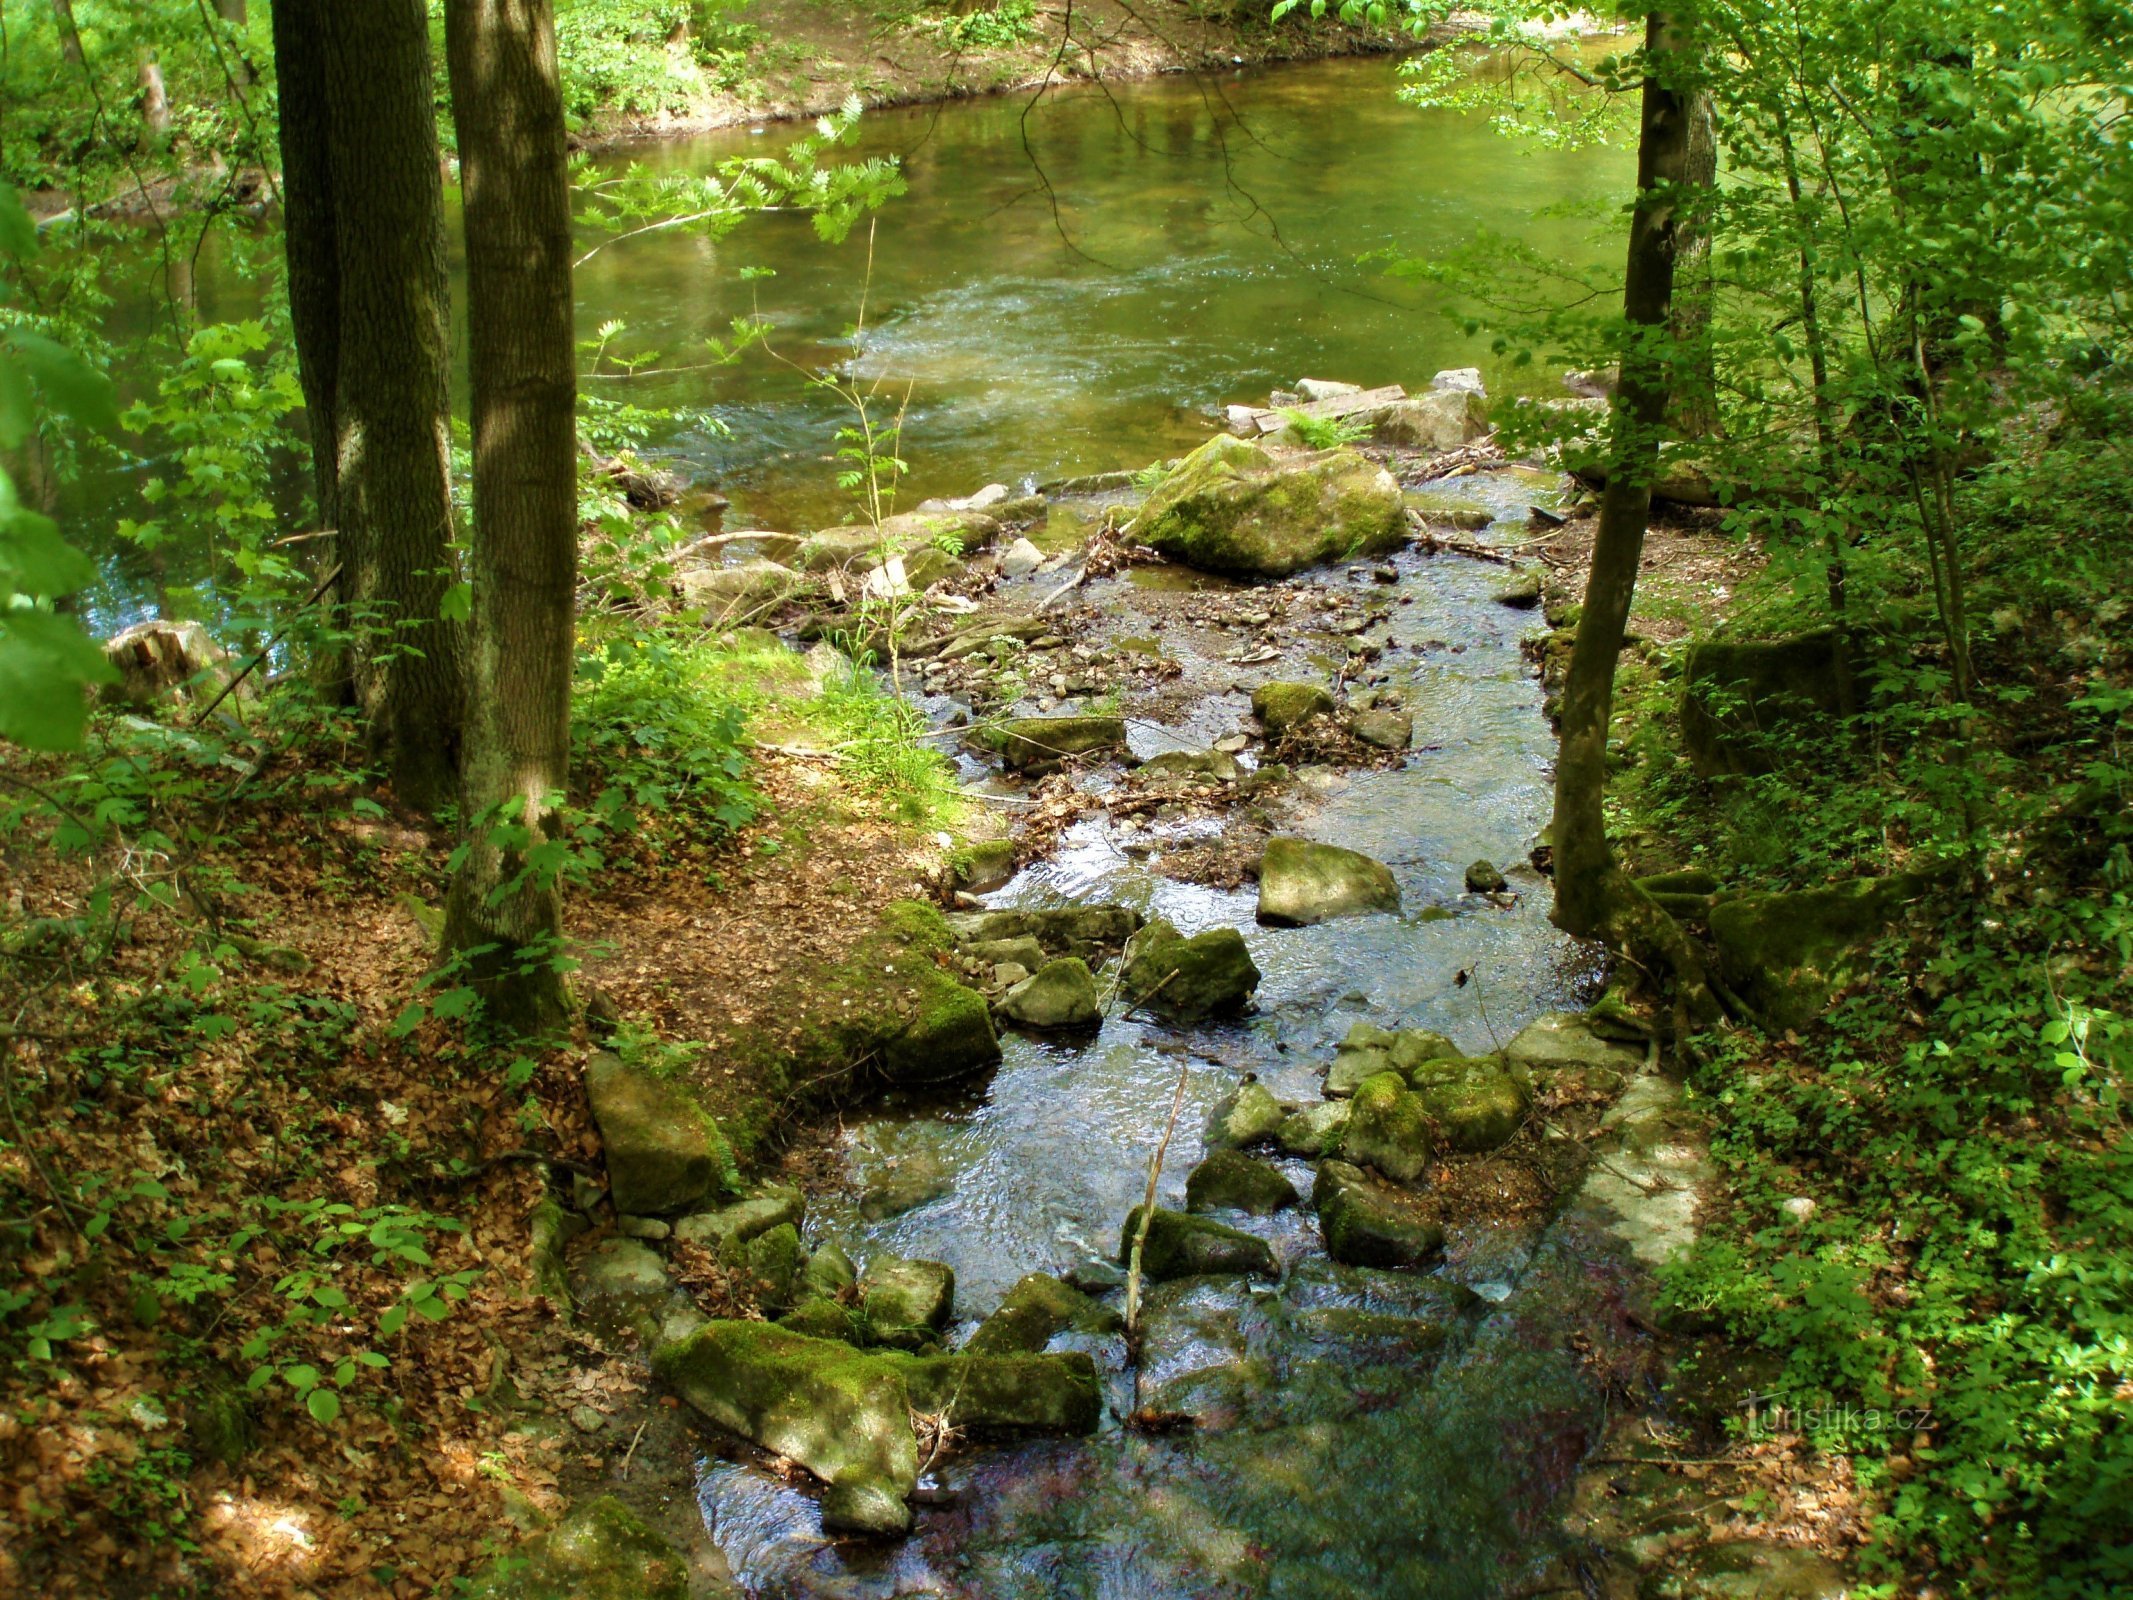 Confluența pârâului Slatina și Úpa pod Výmolem (Slatina nad Úpou, 14.5.2009)